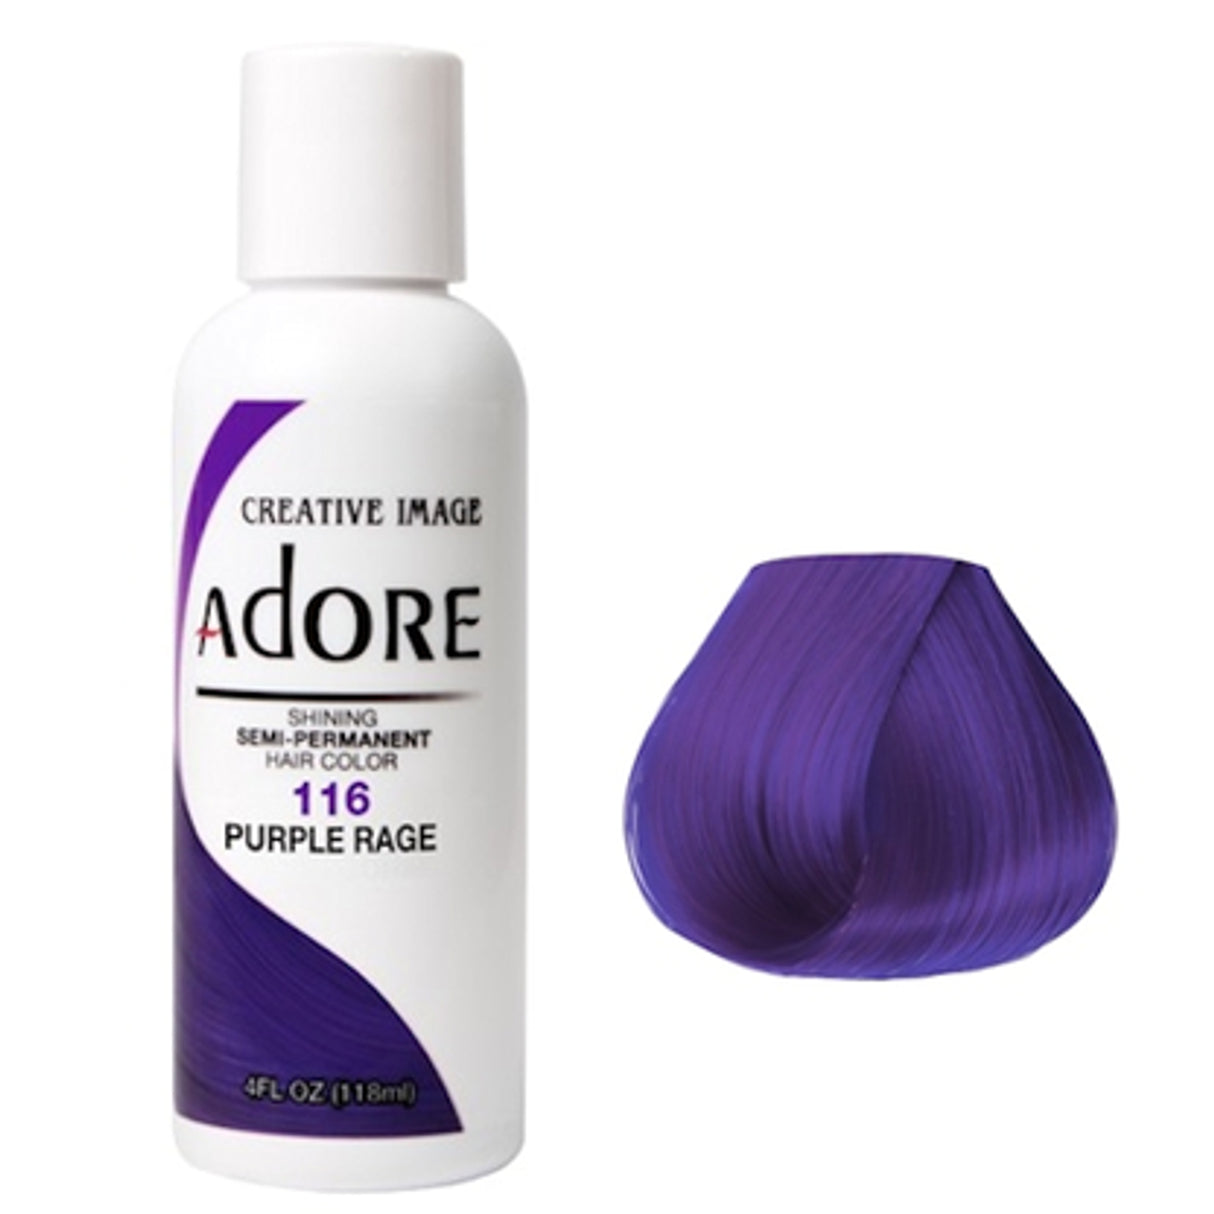 Adore Semi Permanent Hair Colour 116 Purple Rage 118ml